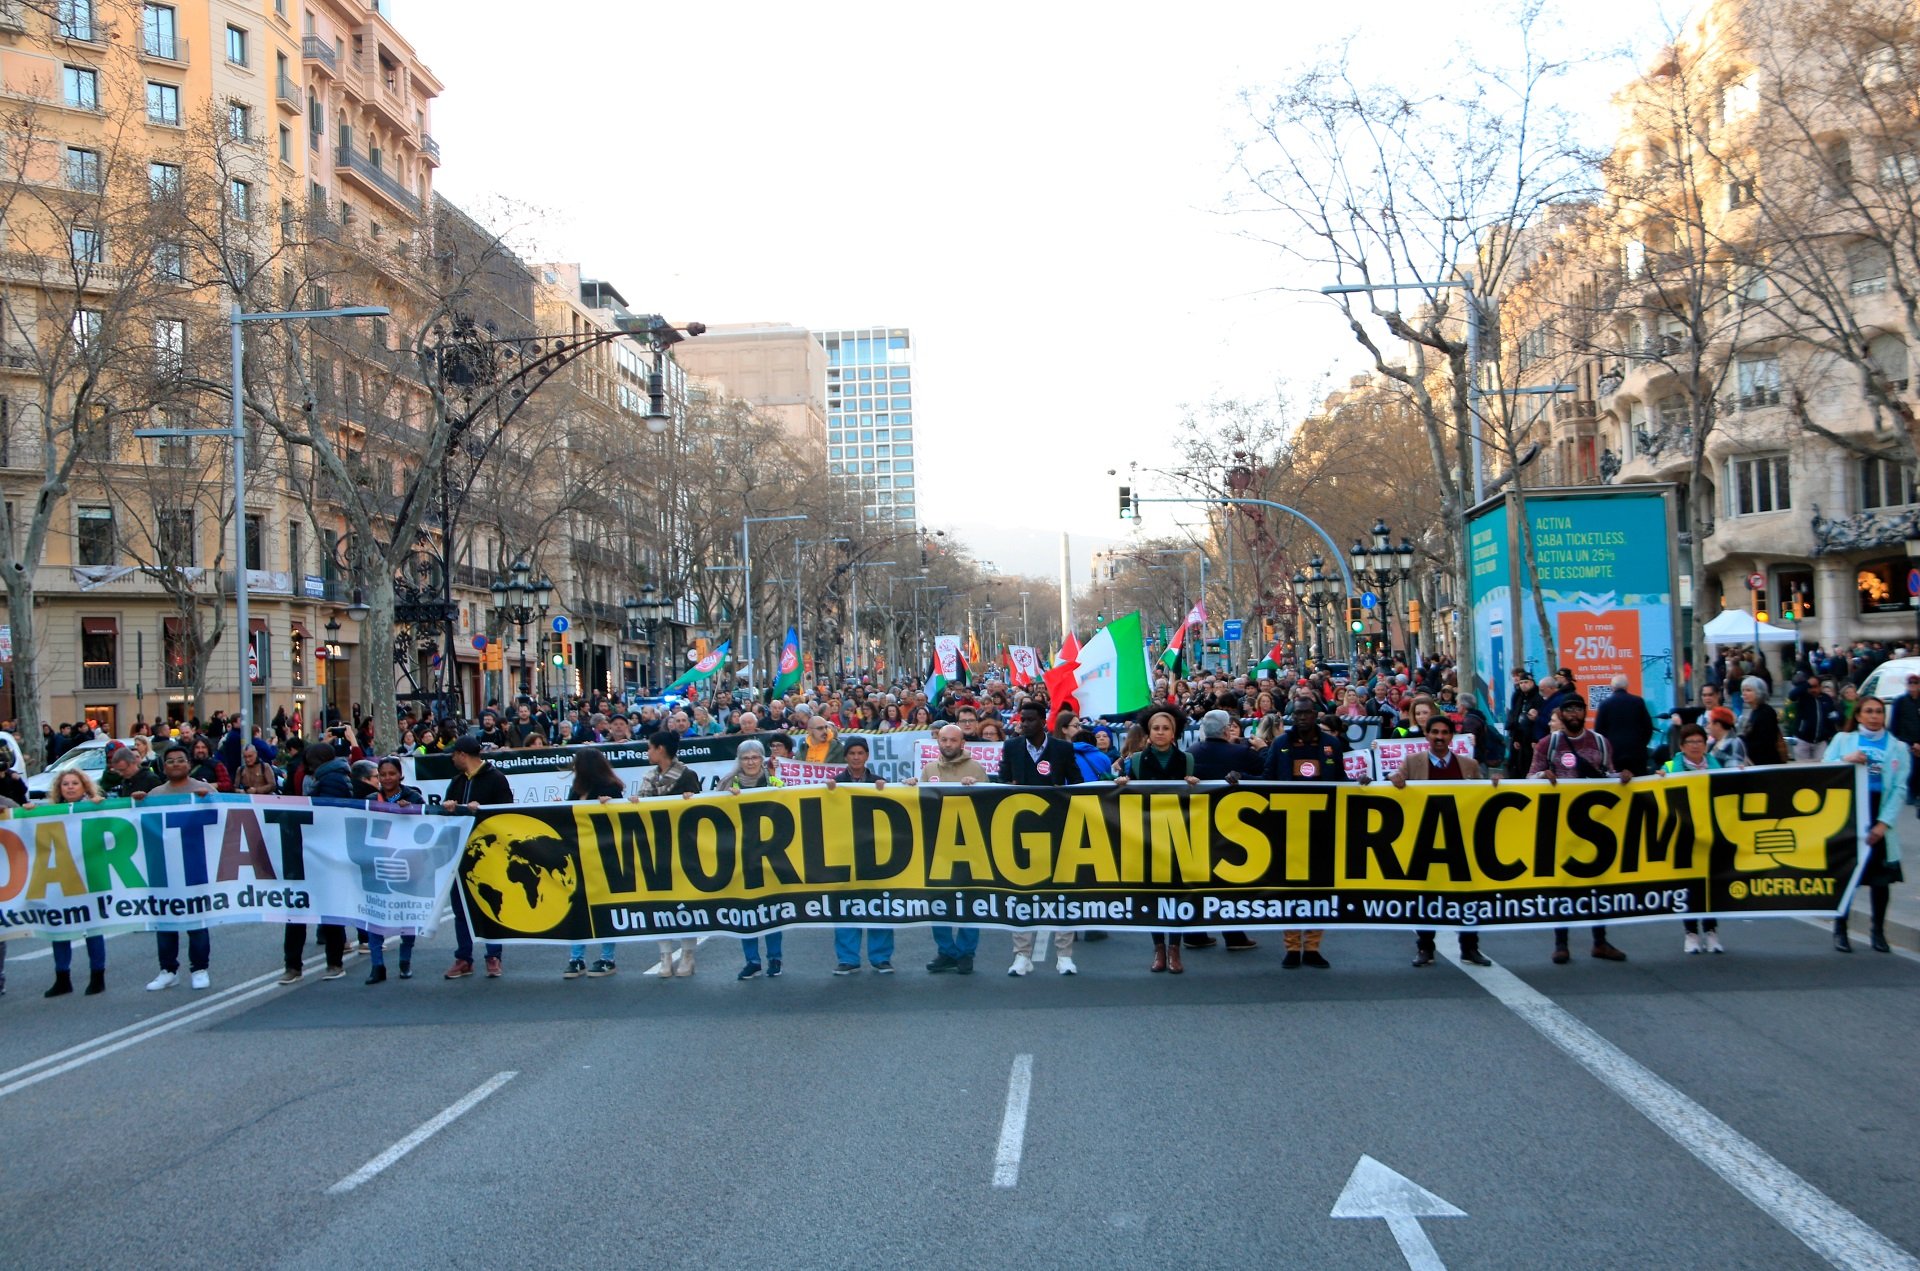 Unas 400 personas se manifiestan en Barcelona contra el racismo y el fascismo